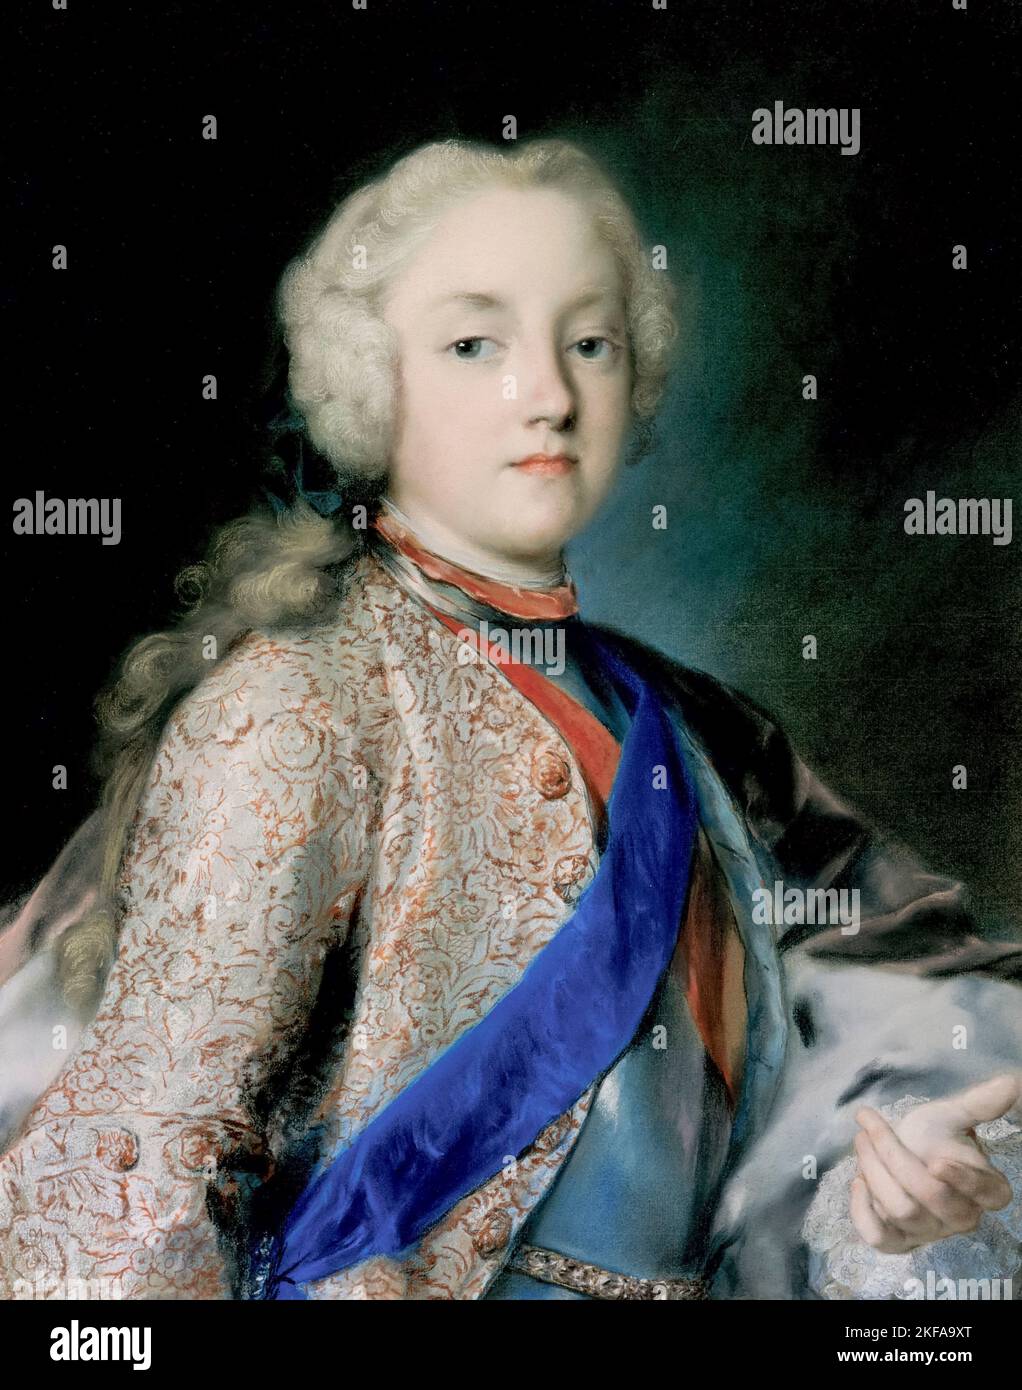 Kronprinz, Friedrich Christian von Sachsen (1722-1763), später König von Polen, Pastellporträt von Rosalba Carriera, 1739-1740 Stockfoto